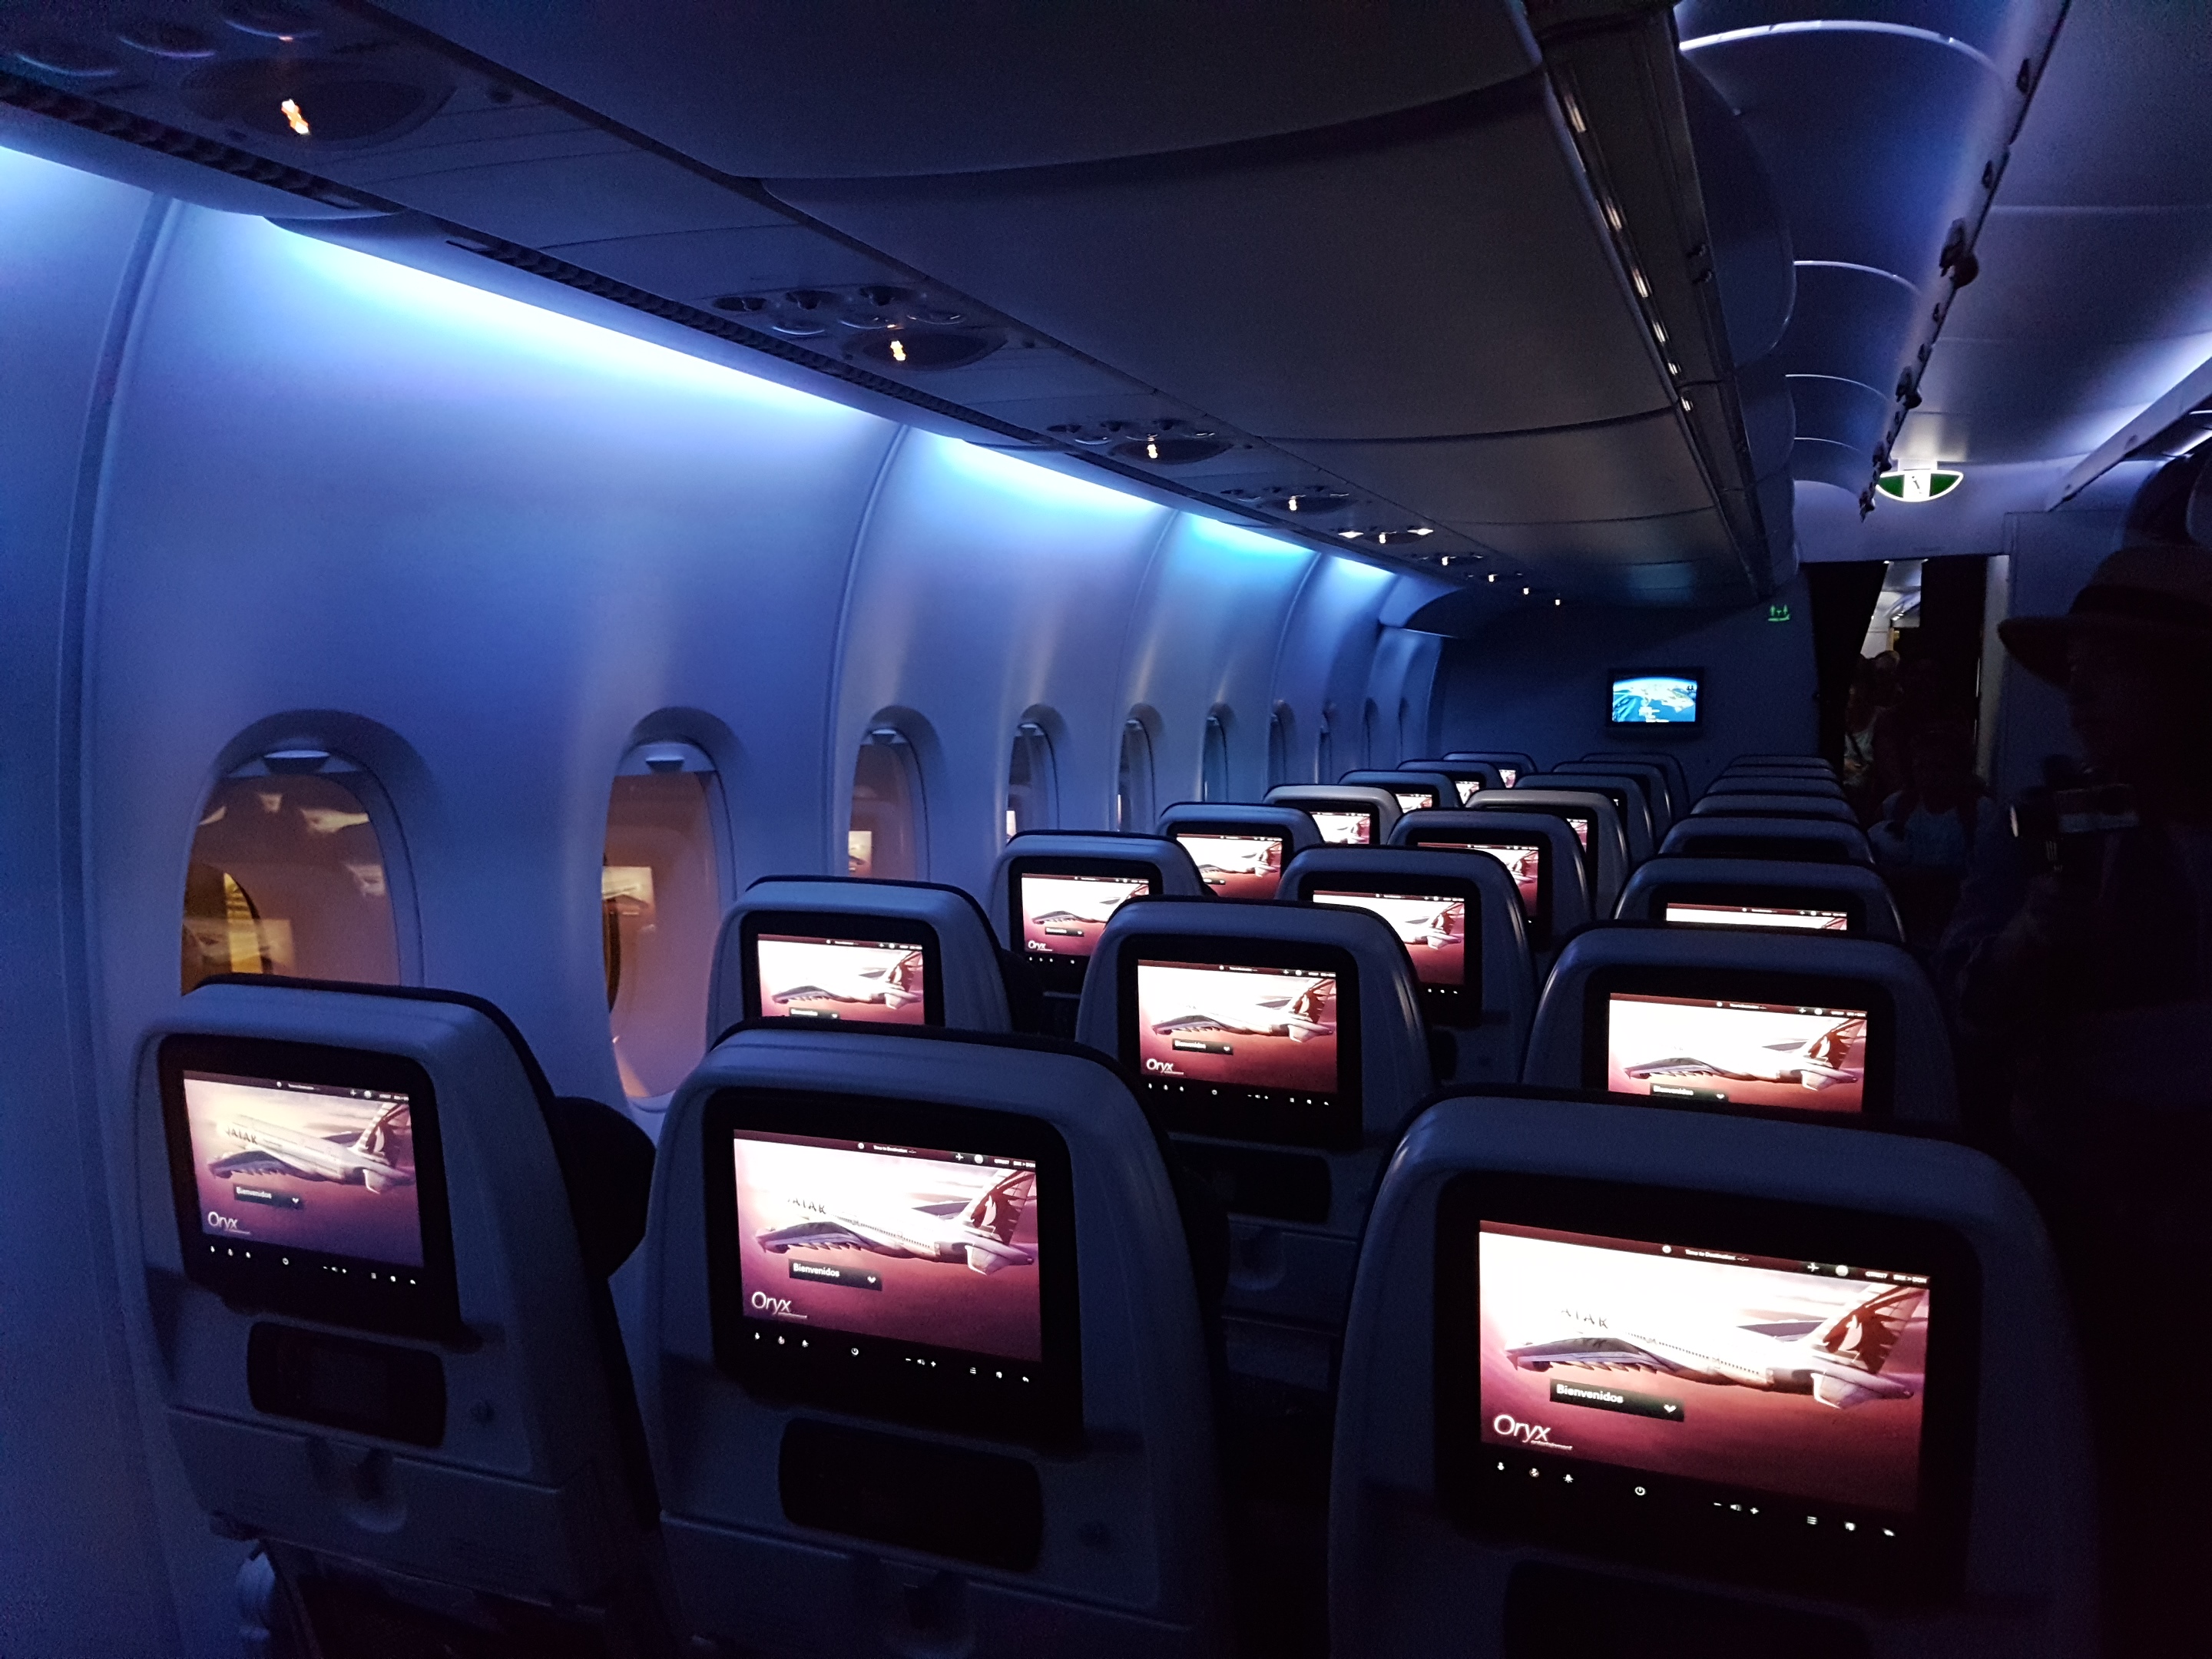 เดินทางกับ Qatar Airways ปลอดภัย อุ่นใจเหมือนเดิม!